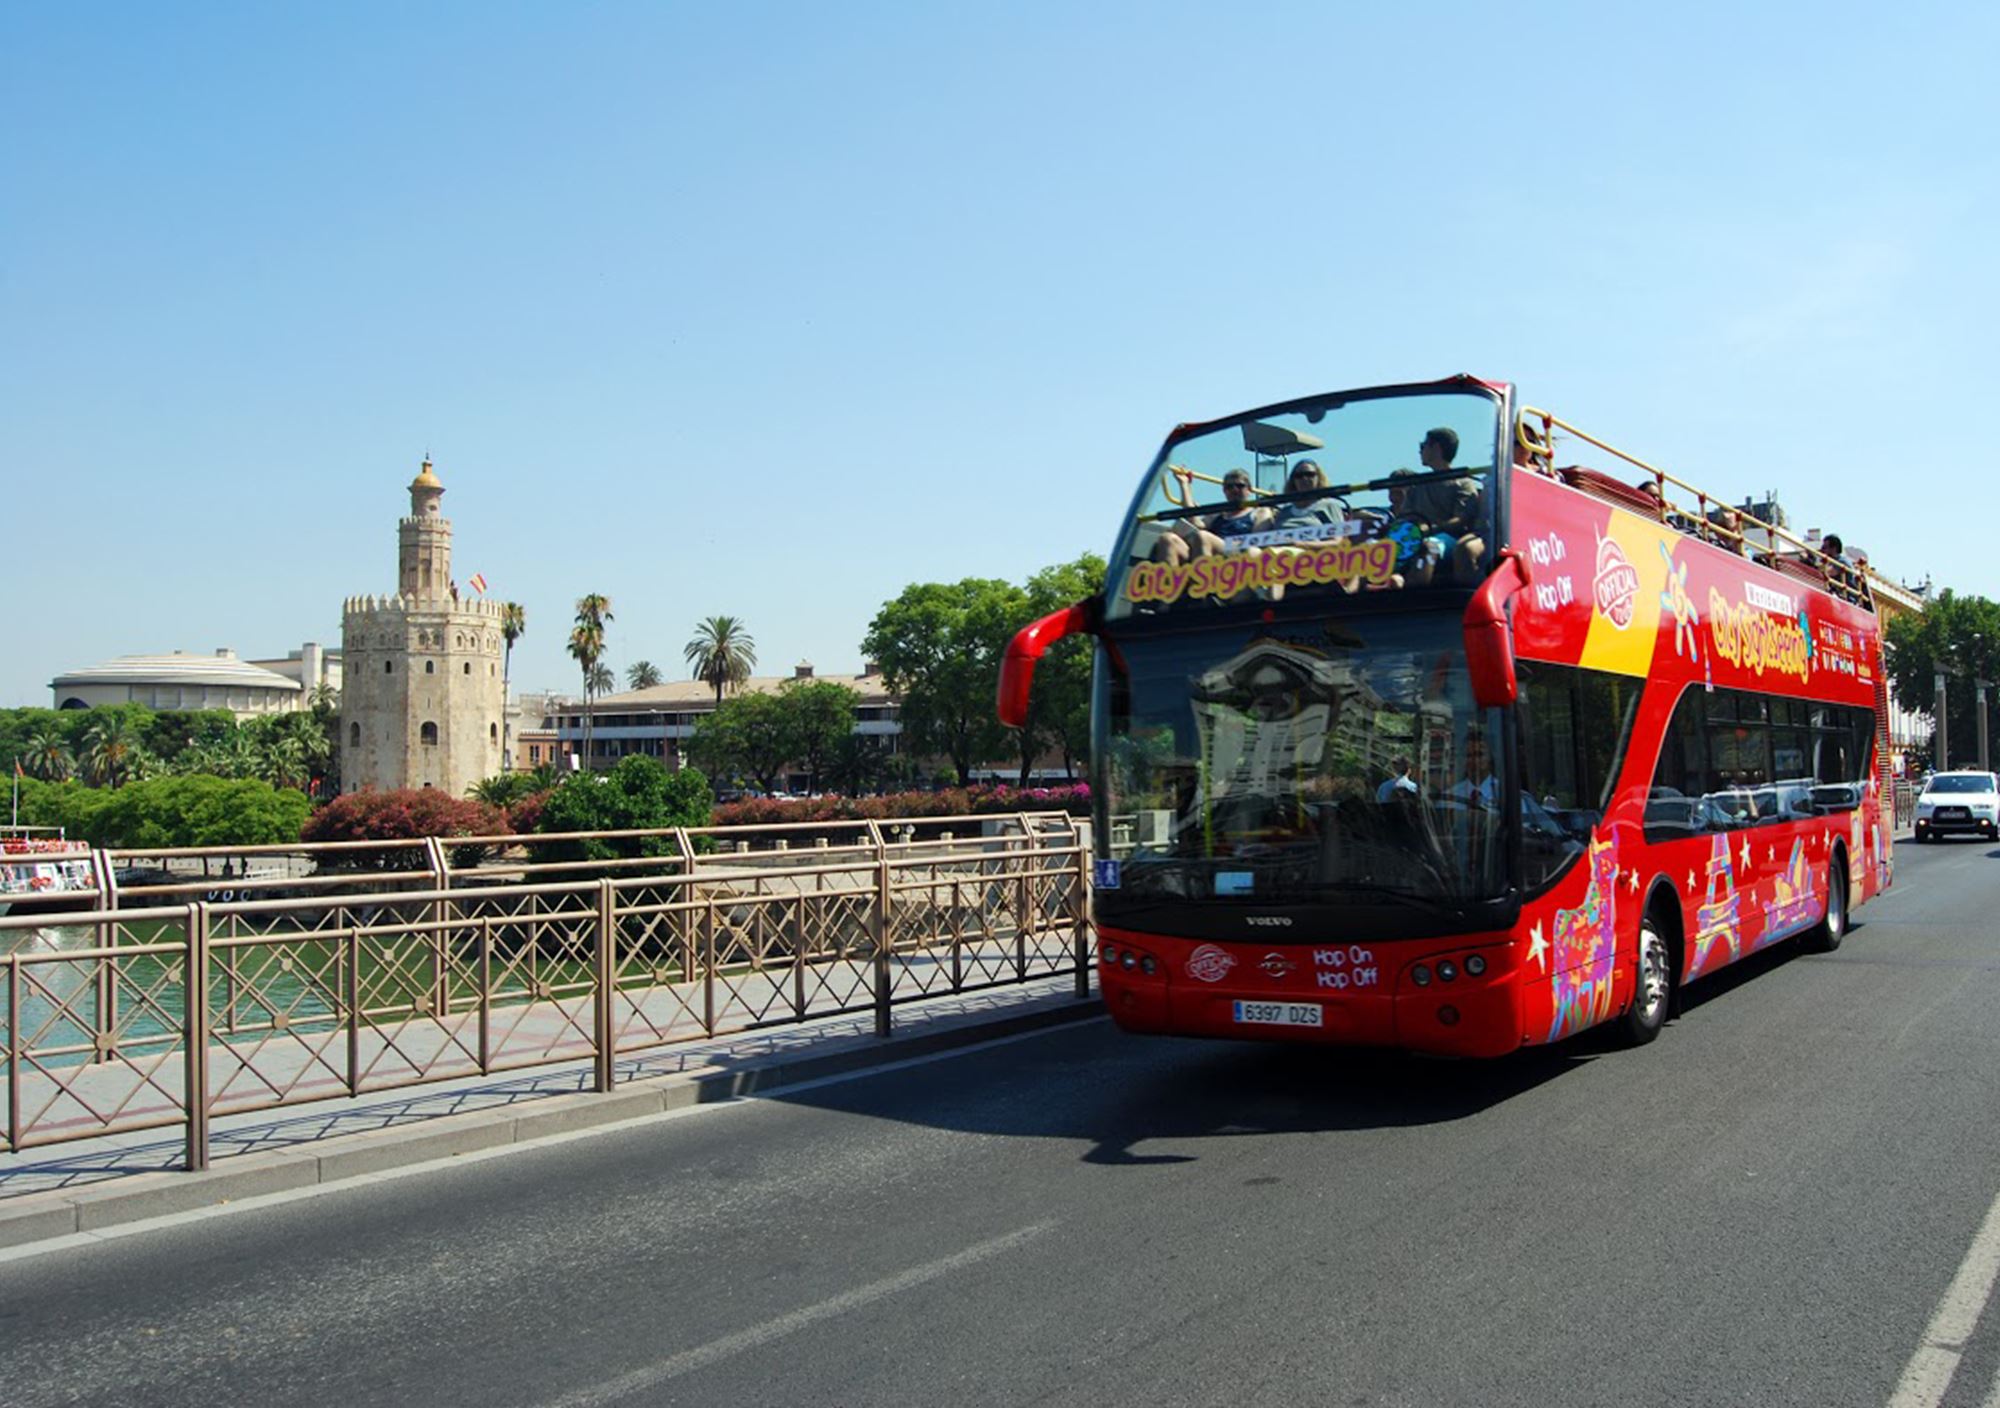 reservieren kaufen buchung tickets besucht Touren Fahrkarte karte karten Eintrittskarten Touristikbus City Sightseeing Sevilla